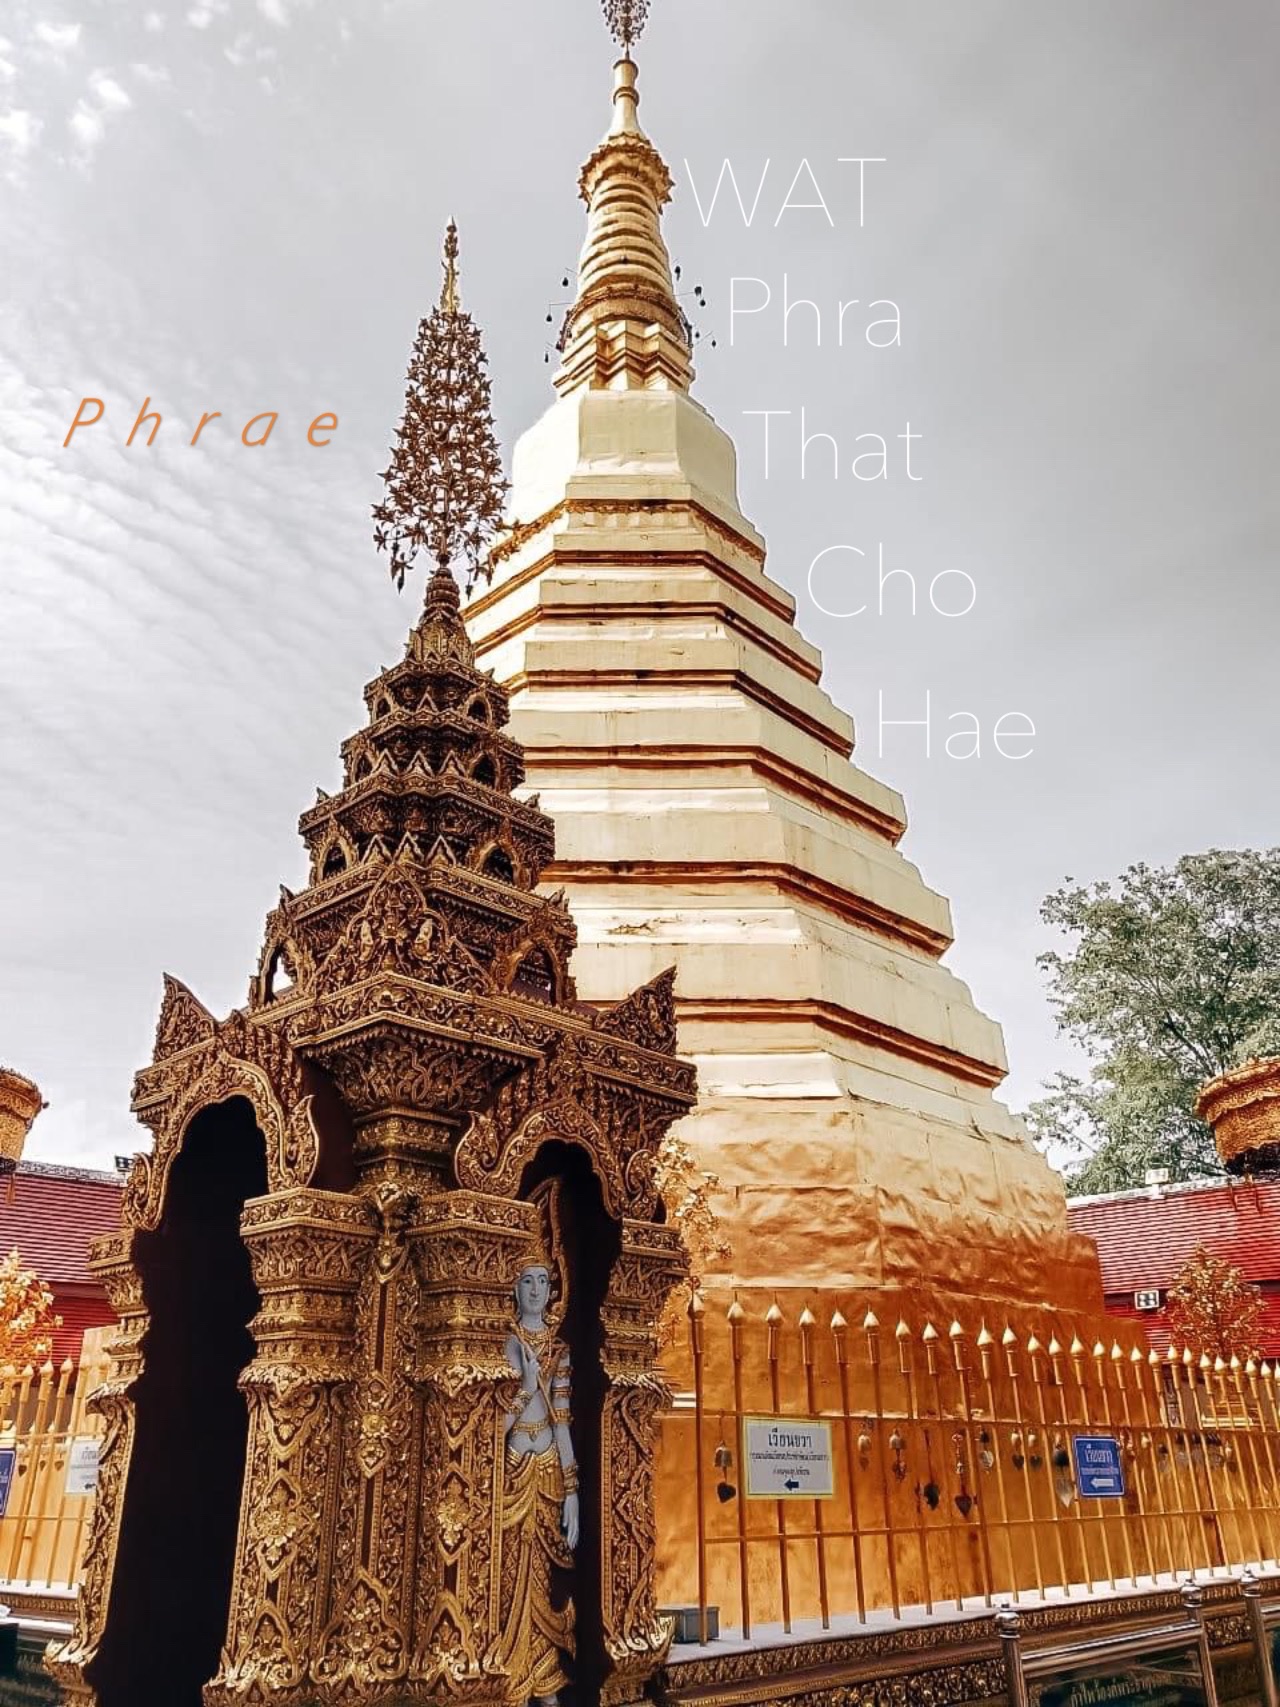 帕那卓(Wat Phra That Cho Hae)